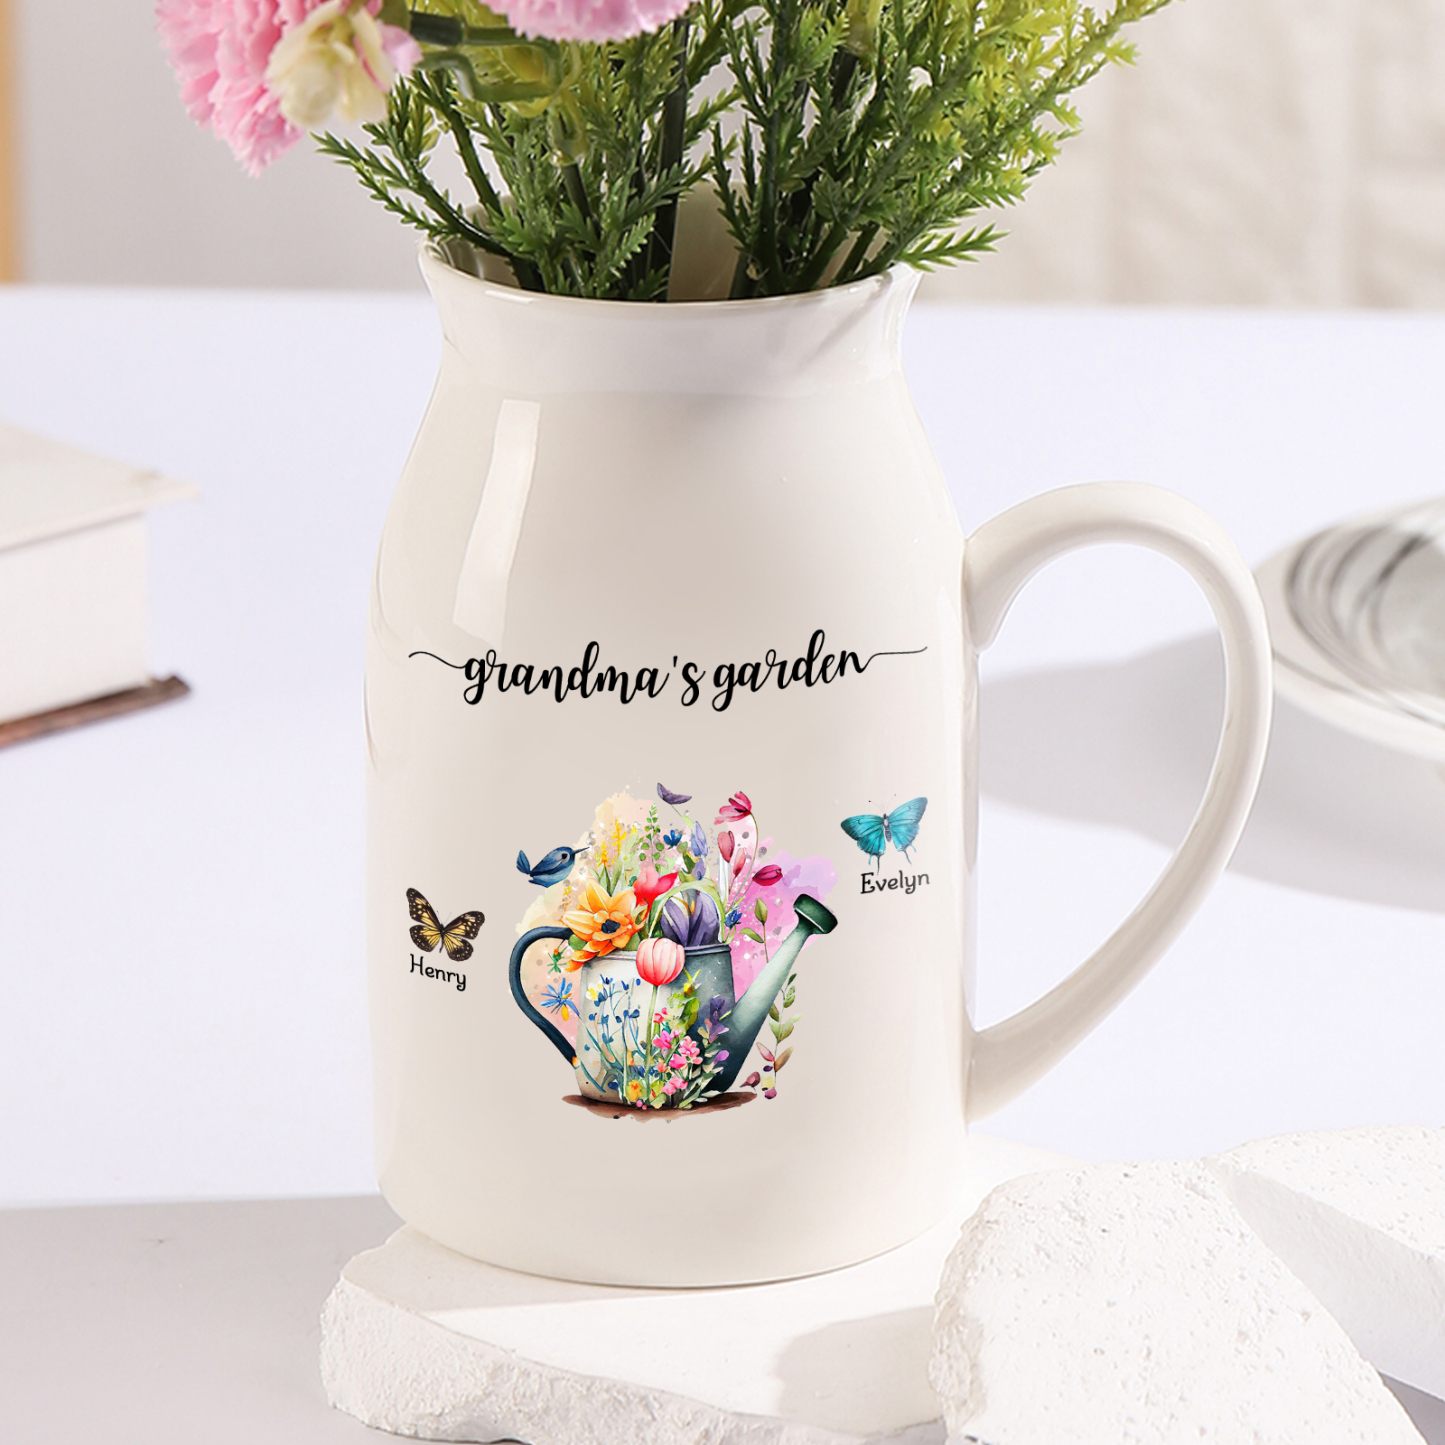 2 Names - Personalized Name "Grandma's Garden" Ceramic Vase as a Gift for Grandma